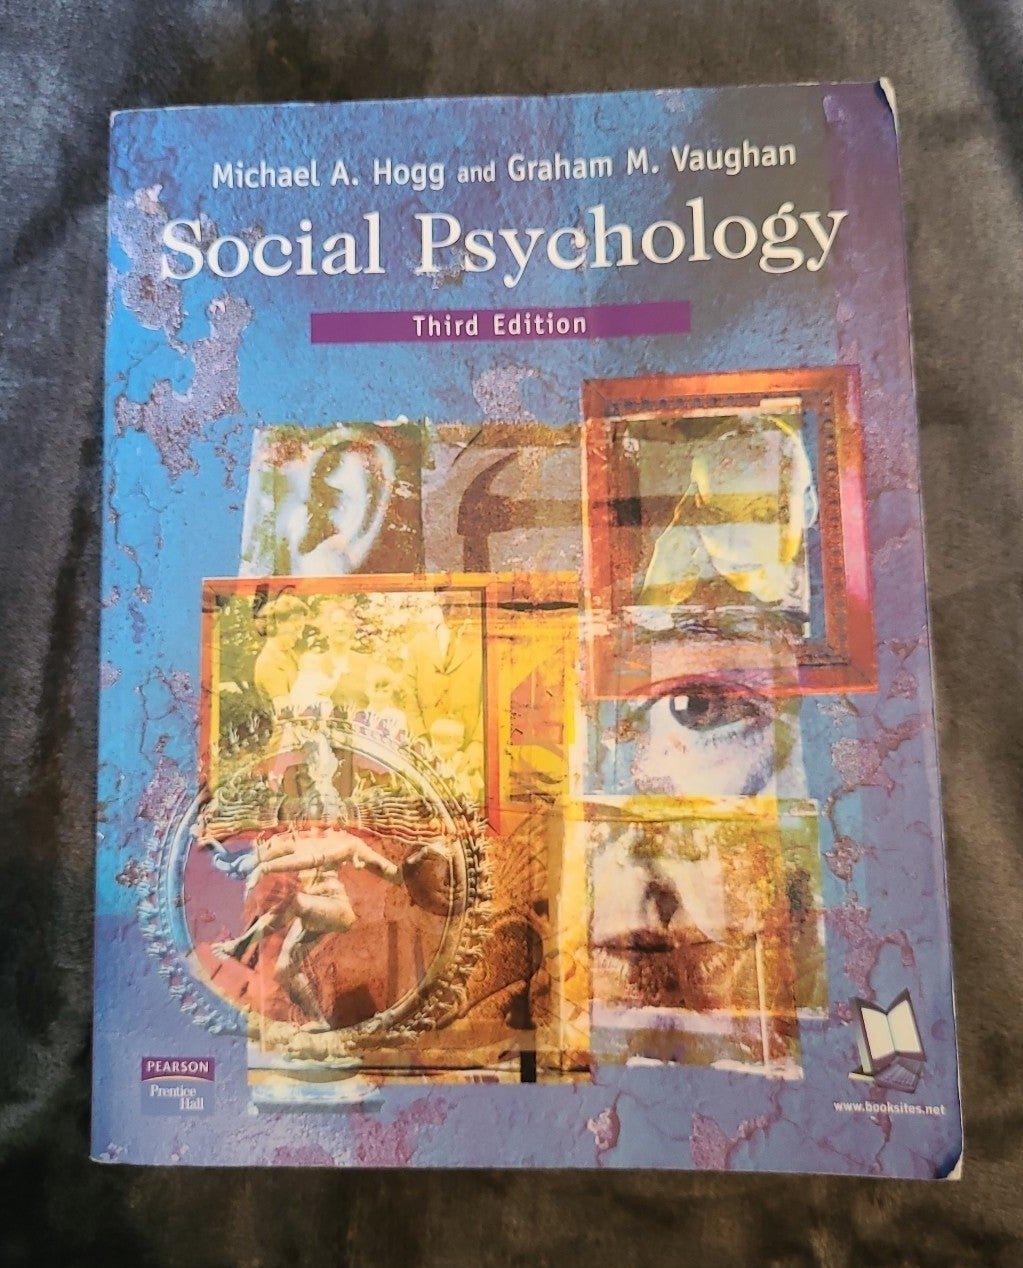 Social Psychology third Edition textbook oN1xXSZpR